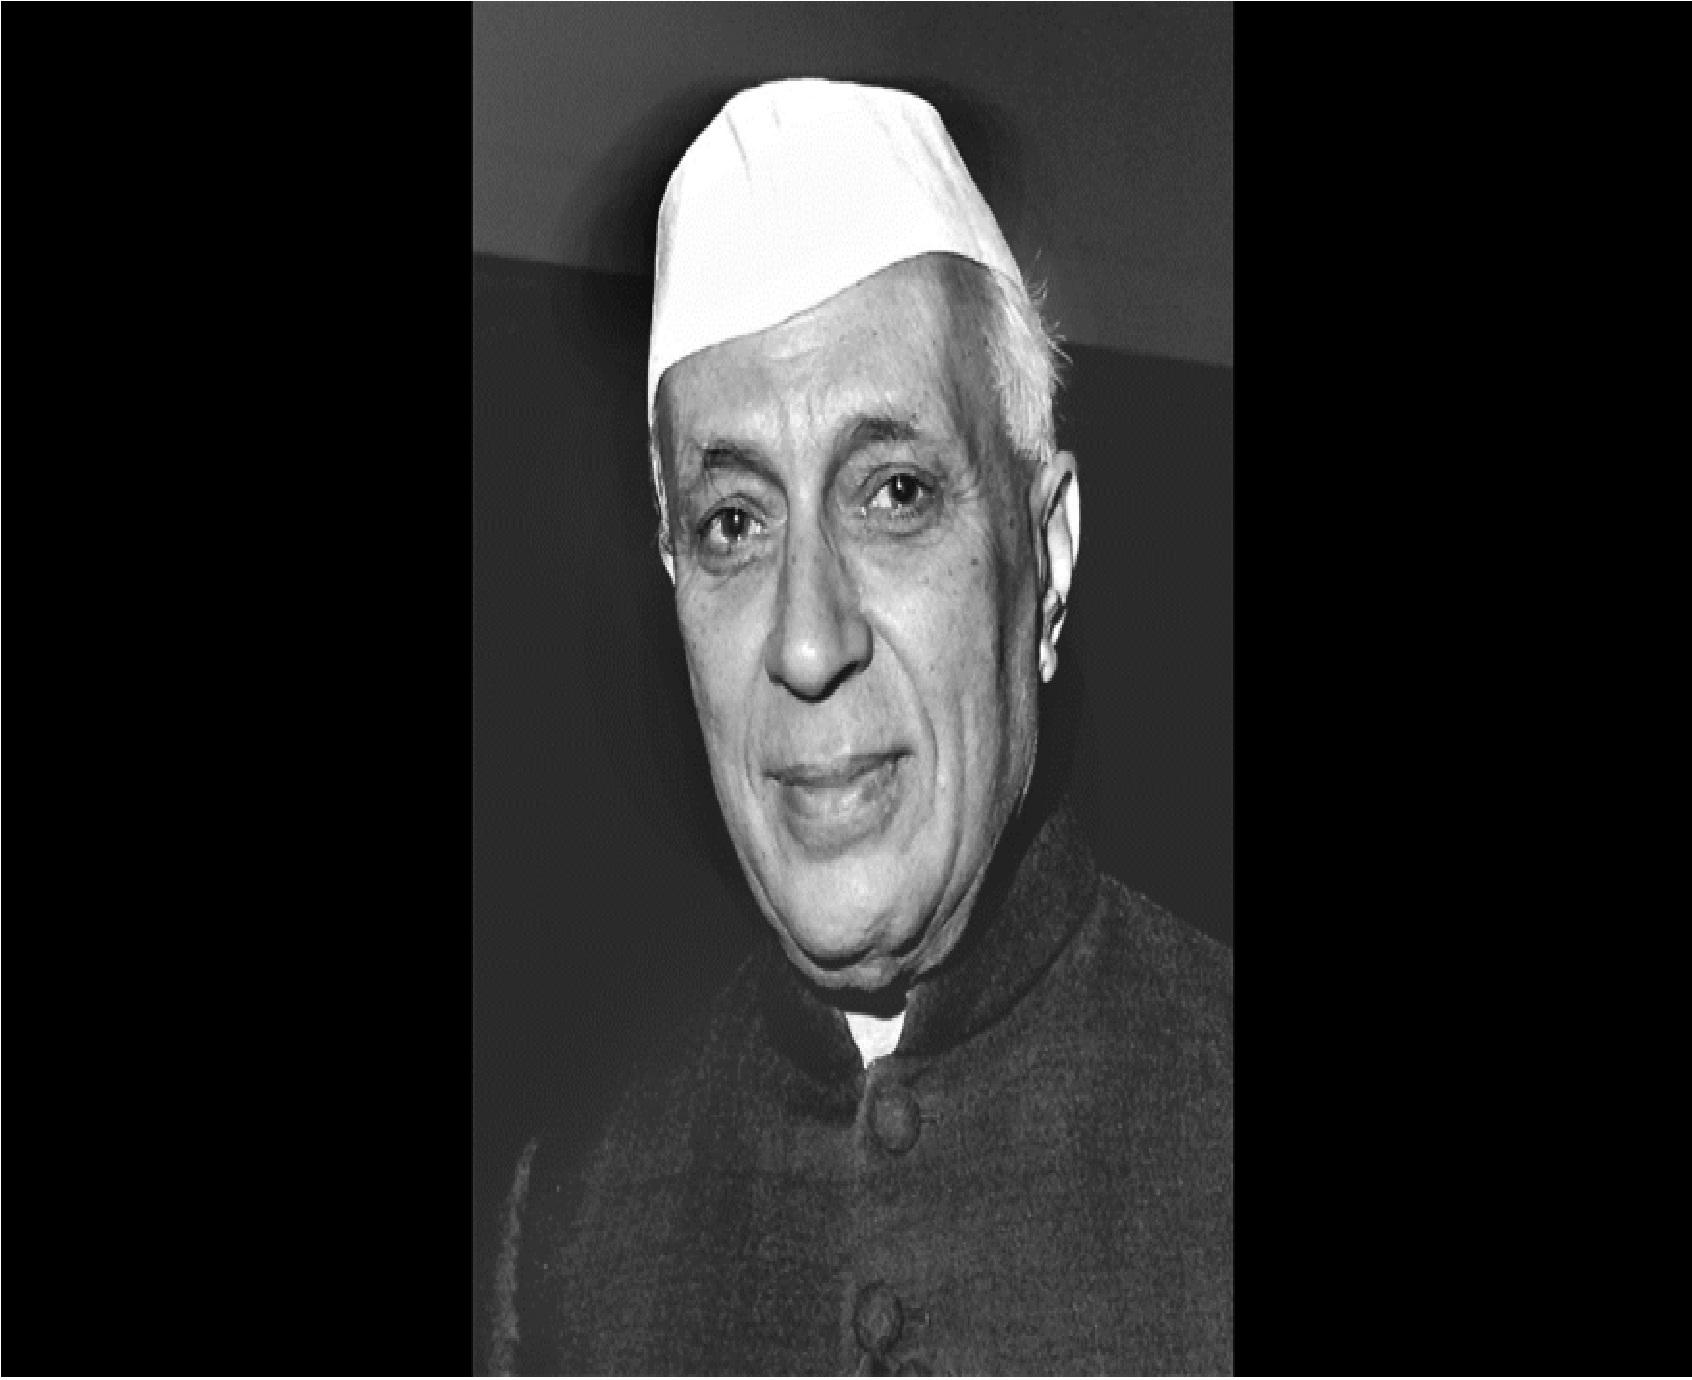 New Delhi: जब भारत को ऑफर किया गया था पाकिस्तान का वो बेशकीमती शहर, नेहरू ने क्यों ठुकरा दिया ओमान के सुल्तान का प्रस्ताव?